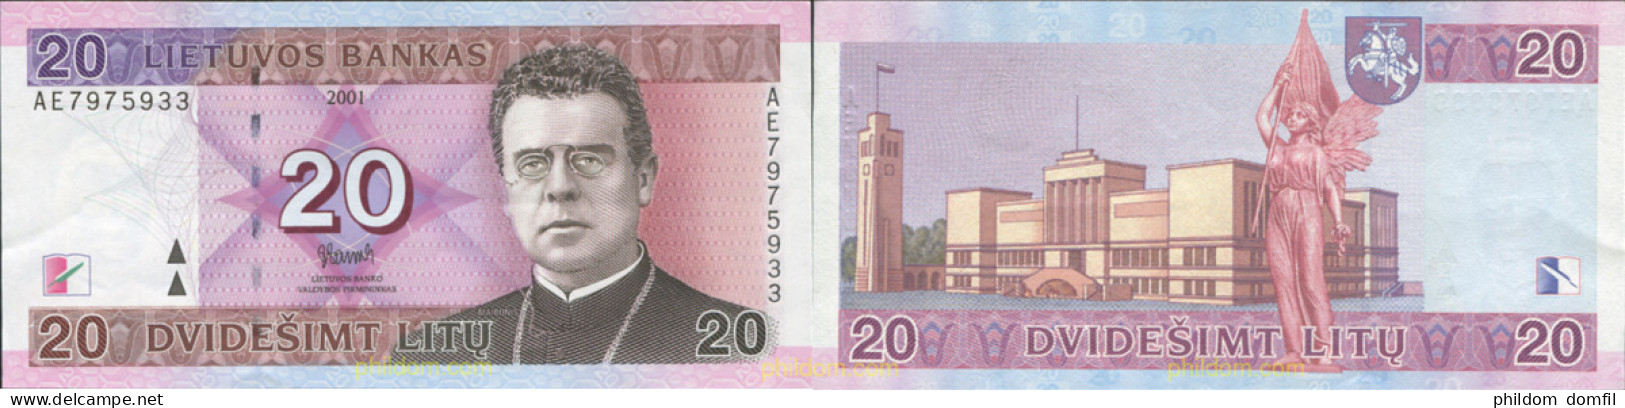 8707 LITUANIA 2001 LITUANIE 20 LIETUVOS BANKAS 2001 LITU LITAS - Lituania